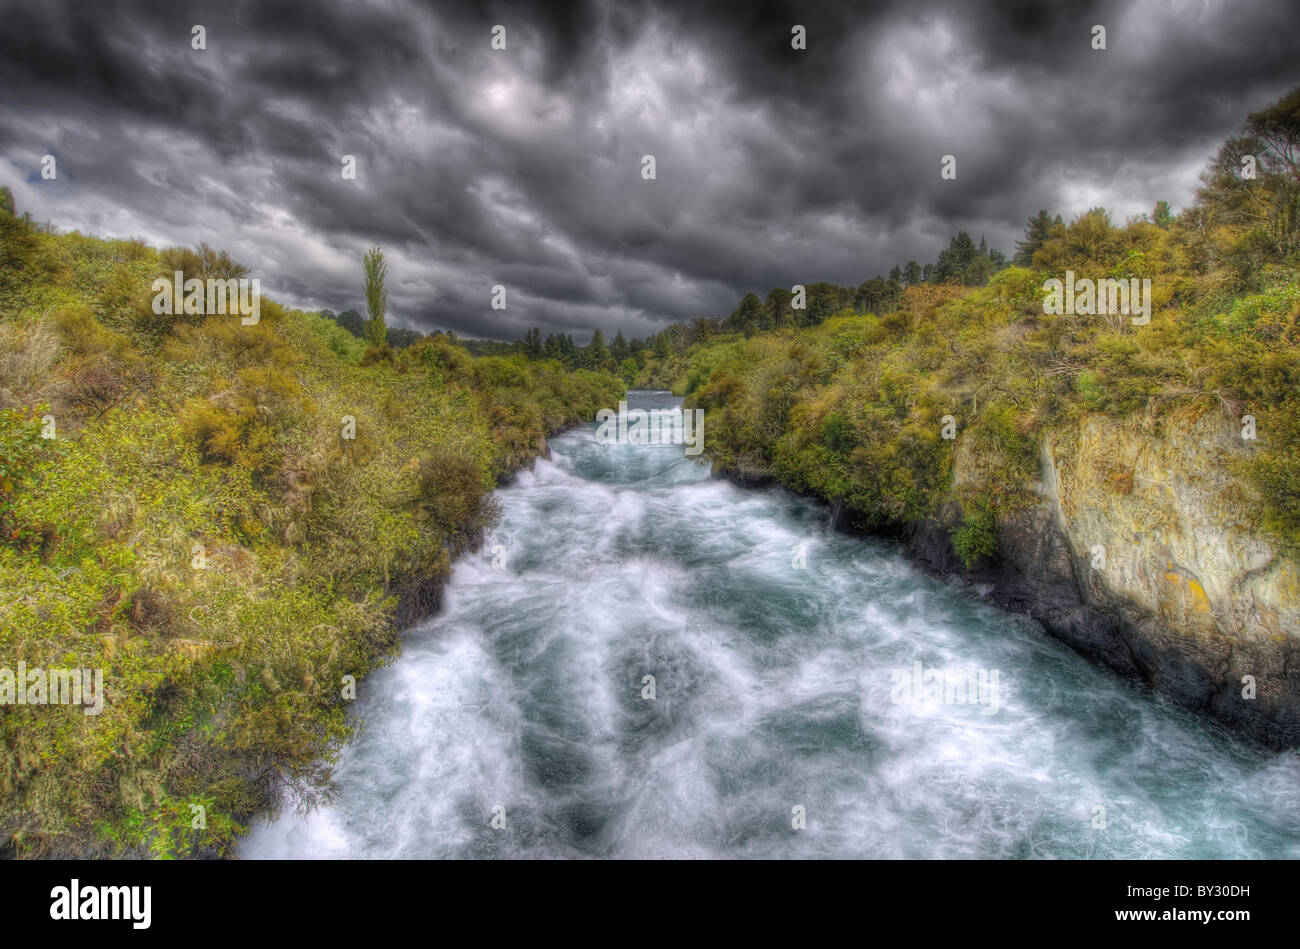 The Waikato River near Huka Falls in New Zealand Stock Photo